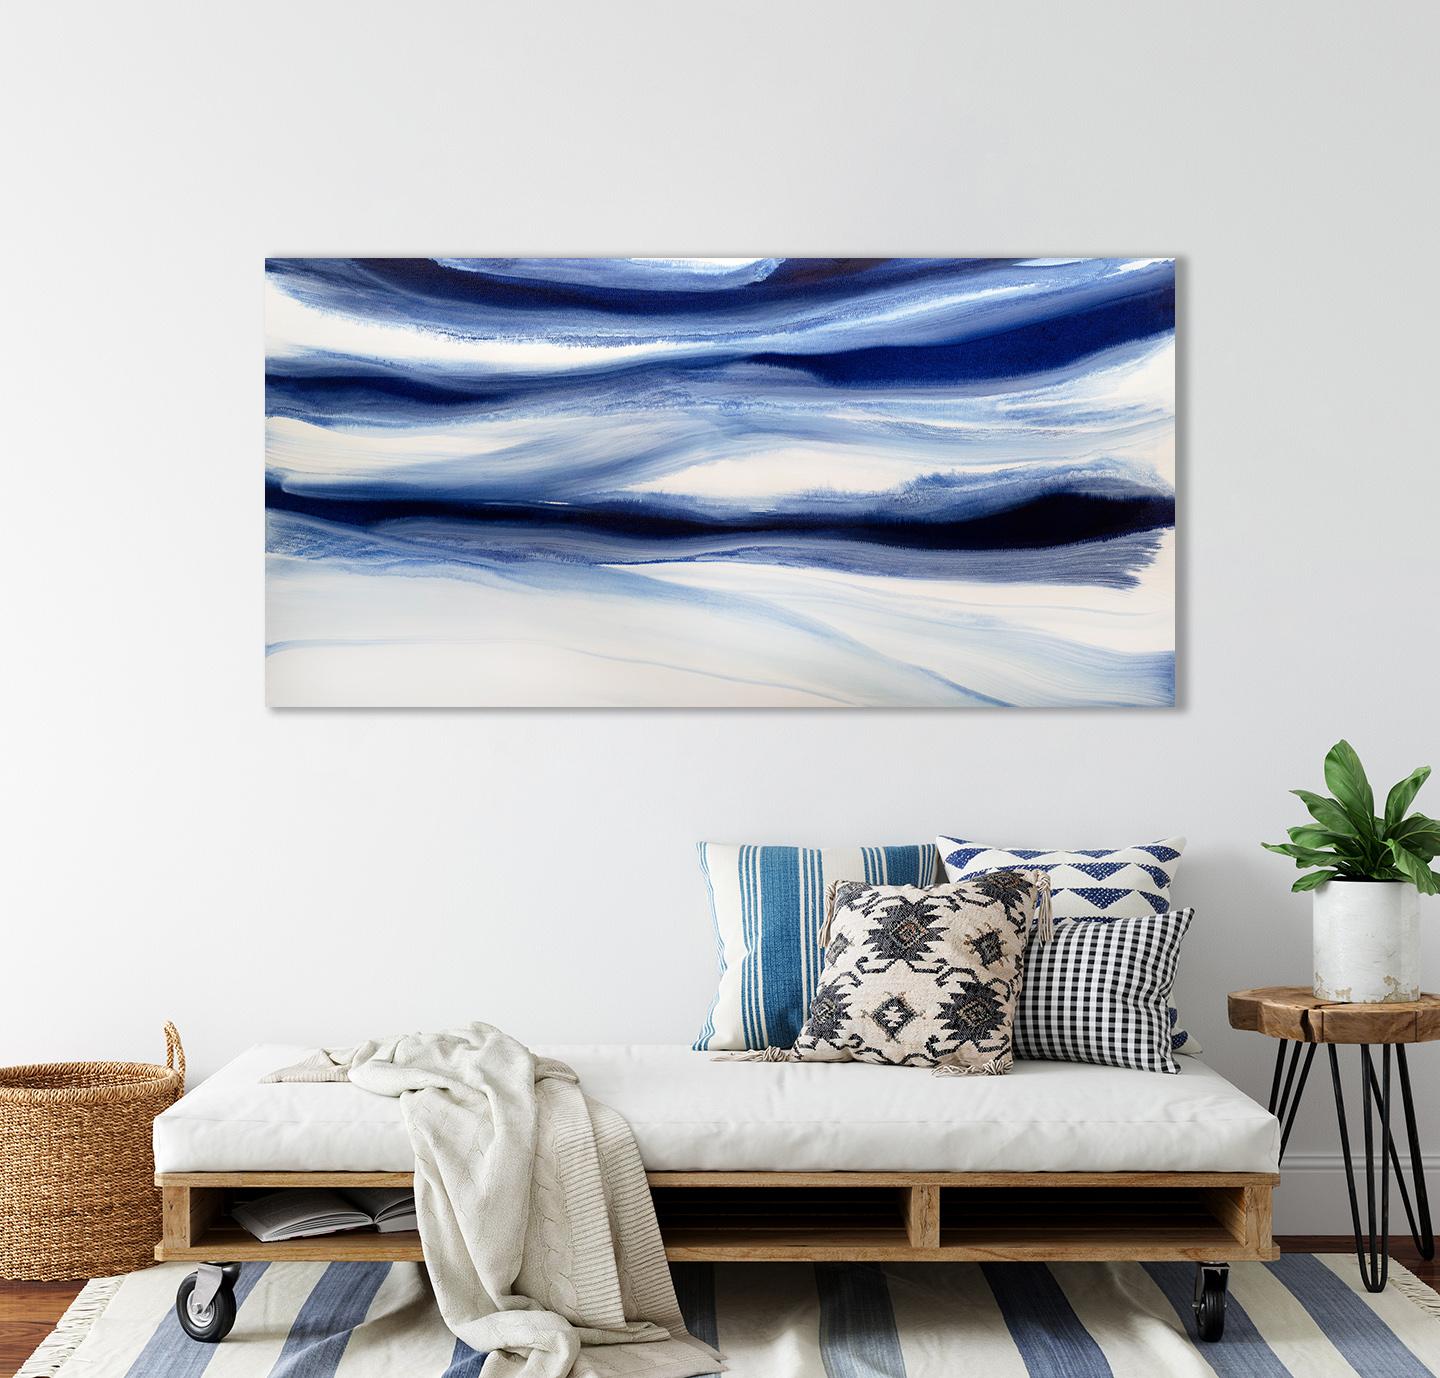 Dieses großformatige abstrakte Gemälde von Teodora Guererra zeichnet sich durch eine blaue und weiße Farbpalette aus. Der Künstler mischt tiefblaue Farbtöne zu einer fließenden Komposition, bei der sich blaue Bänder horizontal über die Leinwand